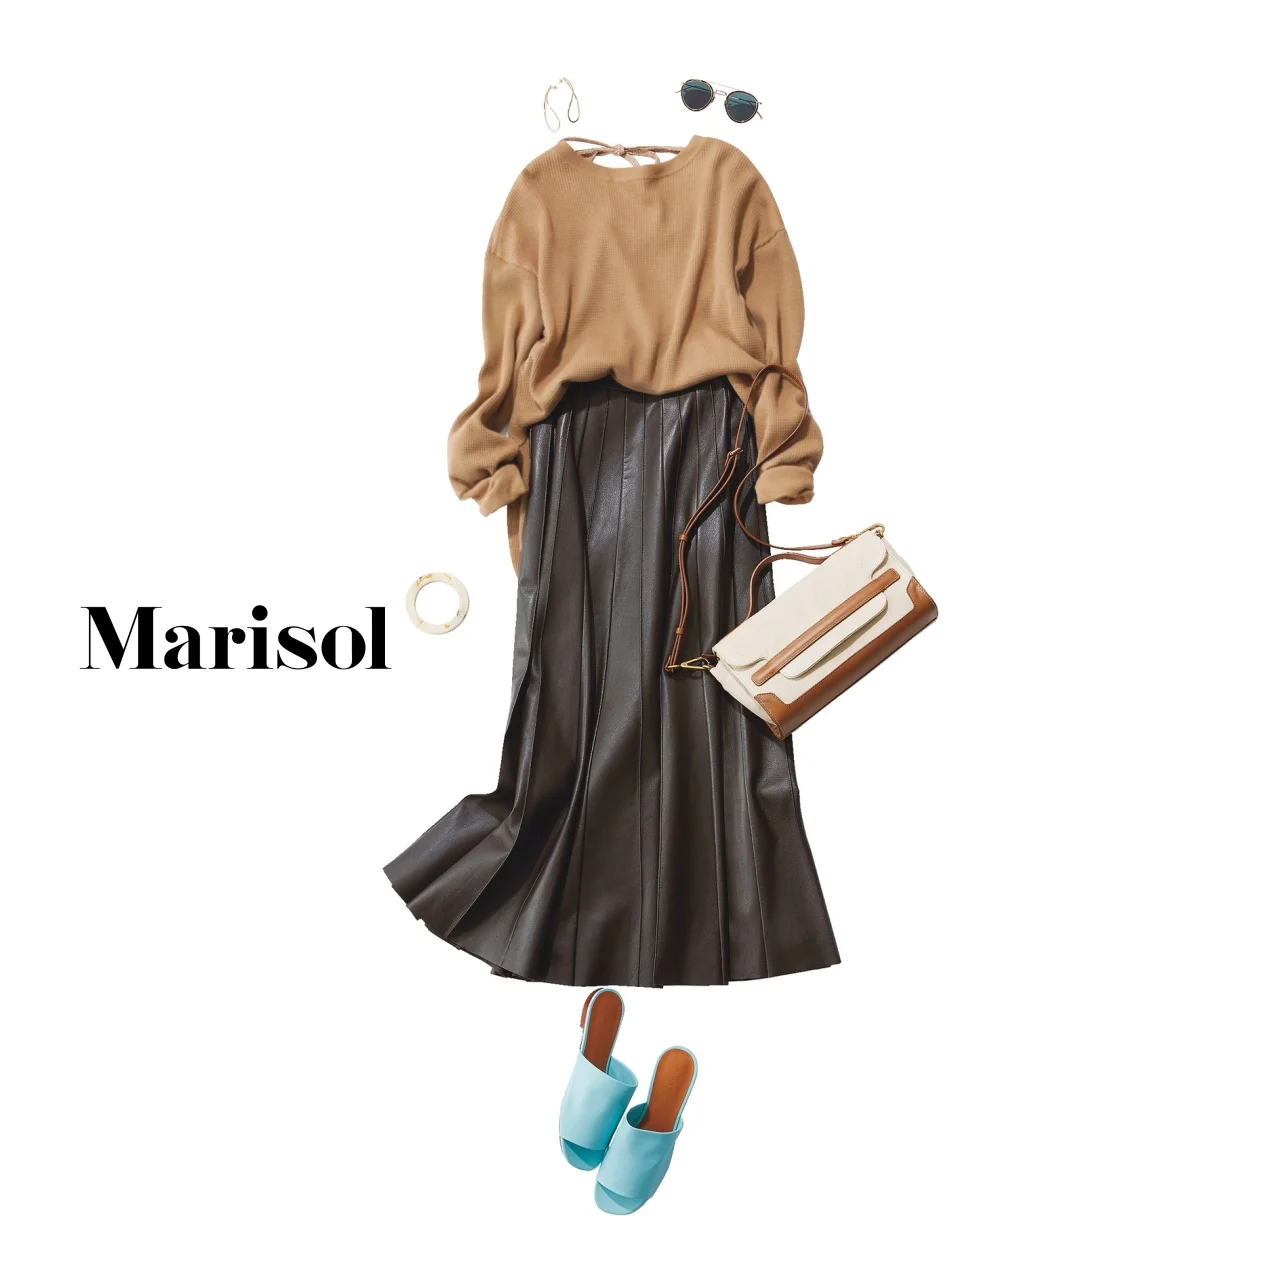 40代ファッション キャメル色ニット×チョコレート色スカートコーデ